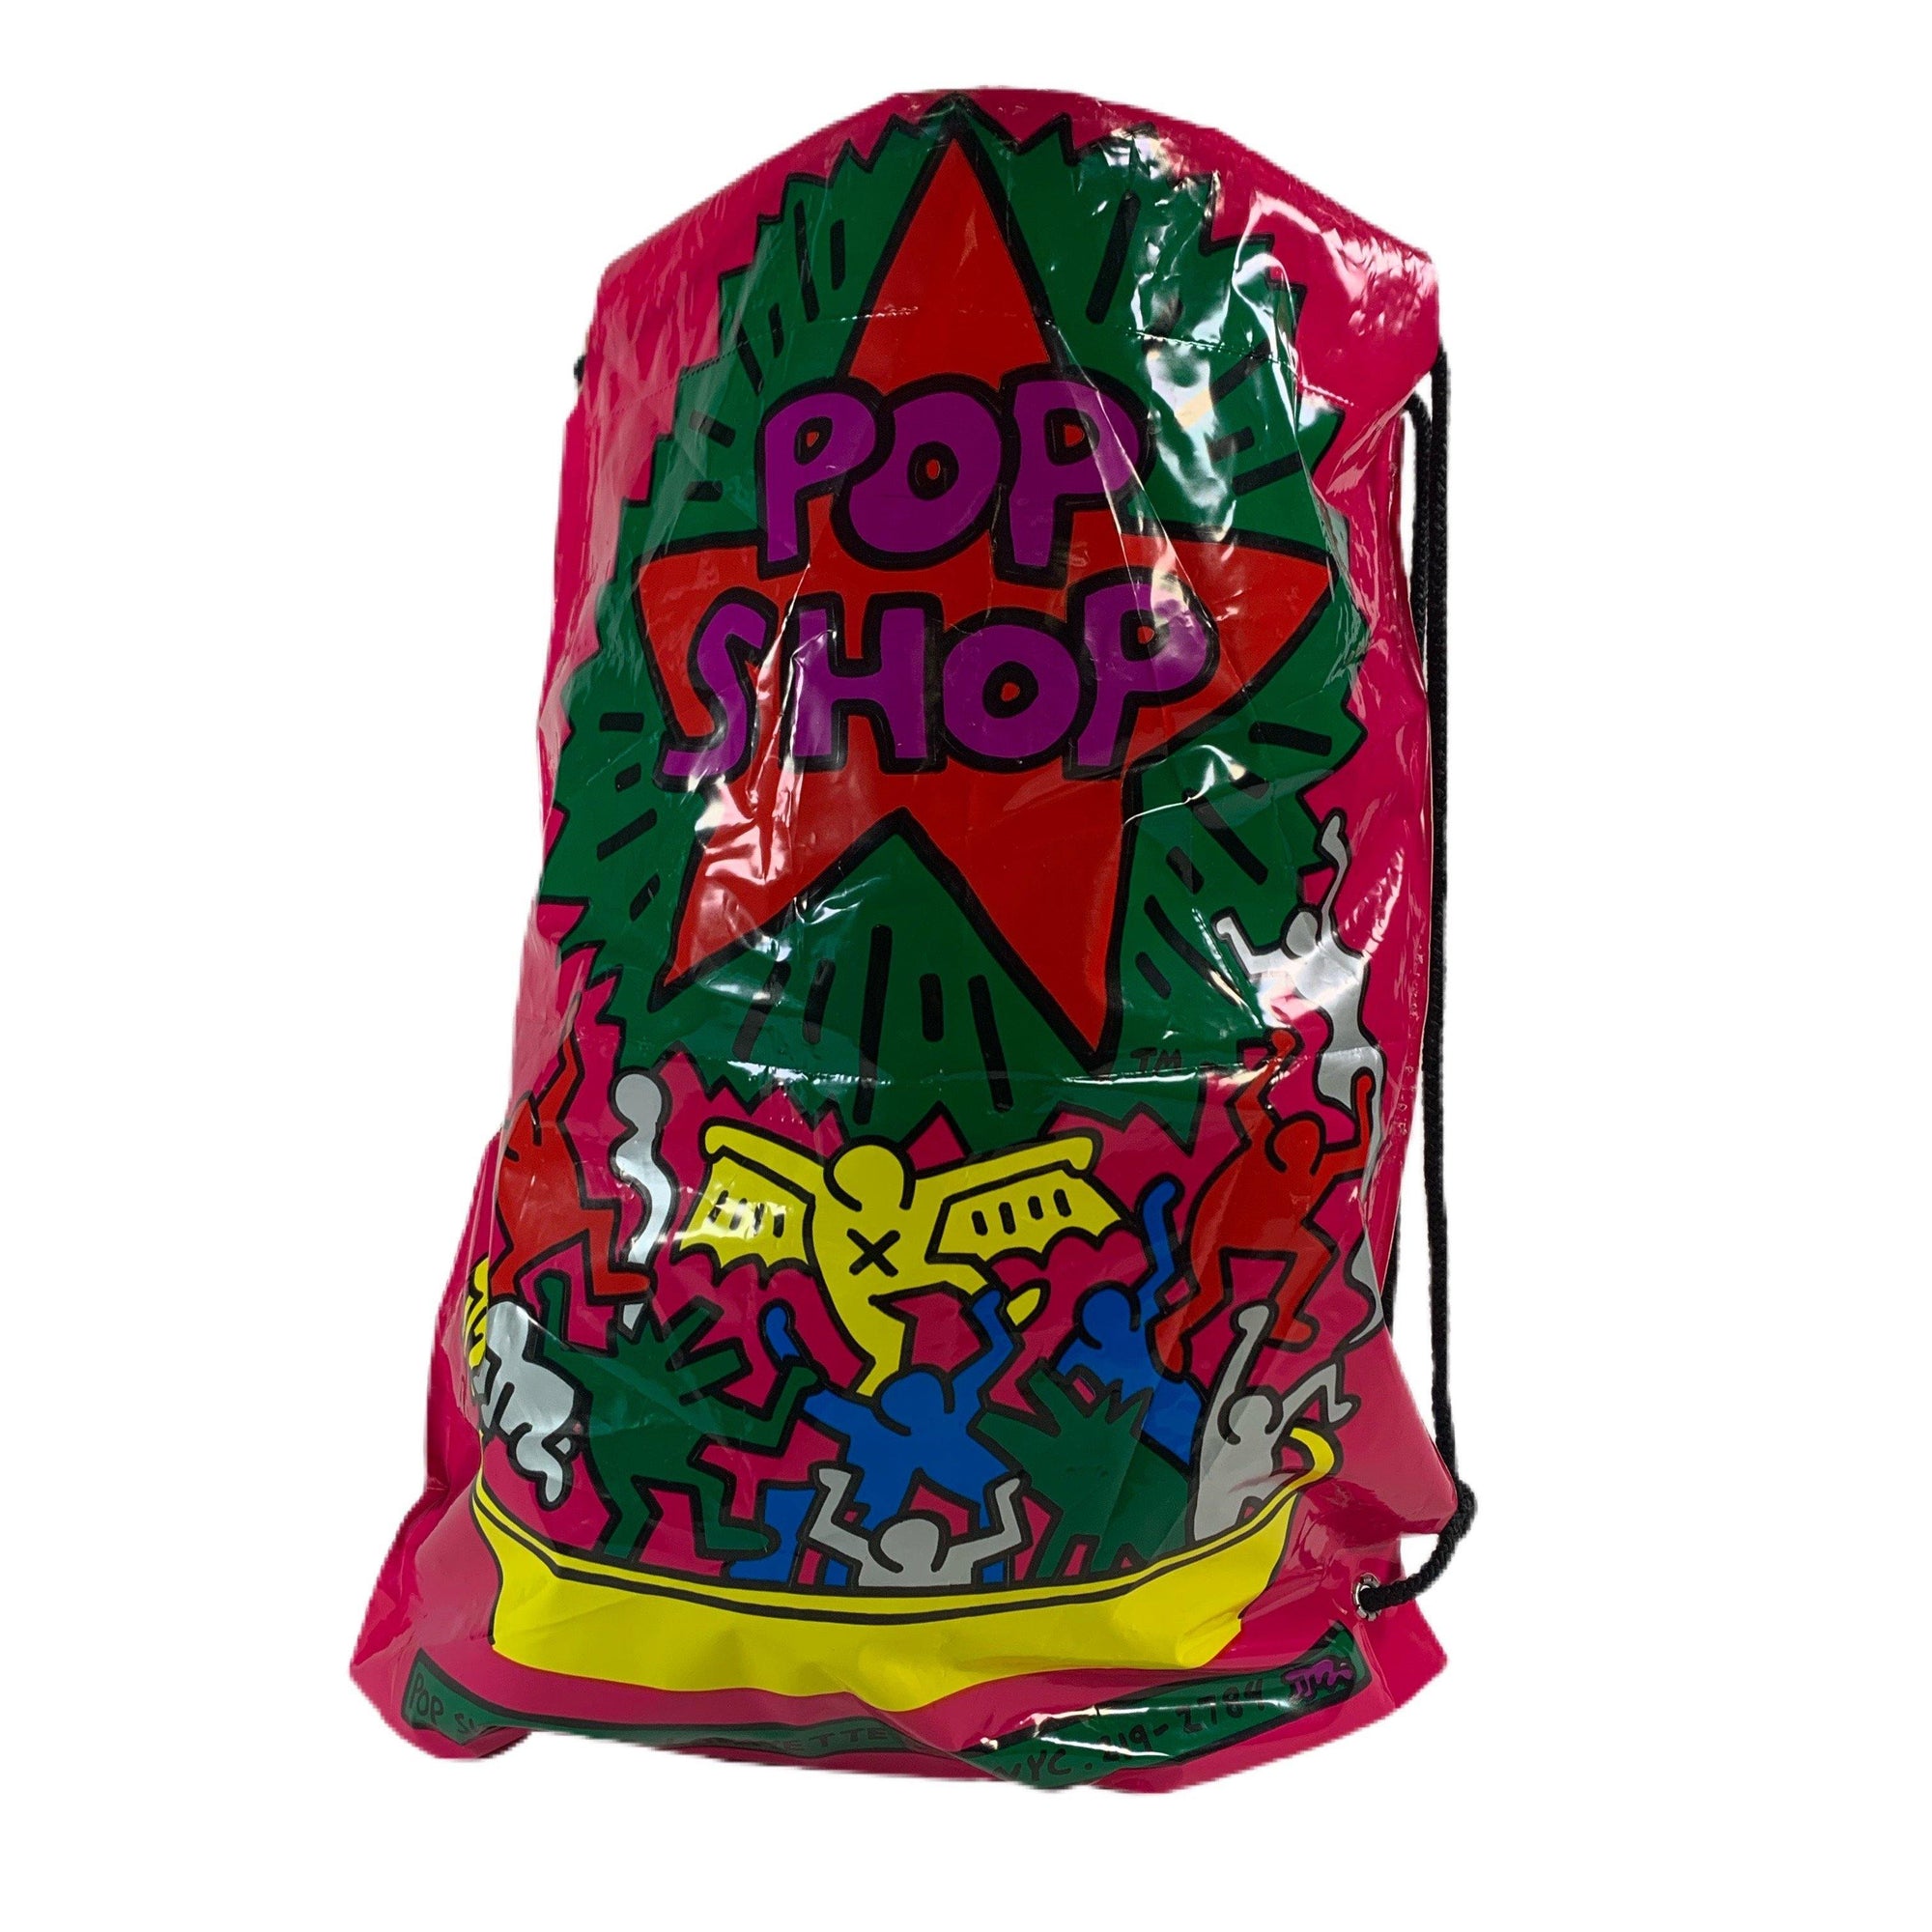 Vintage Keith Haring "Pop Shop" Bag - jointcustodydc